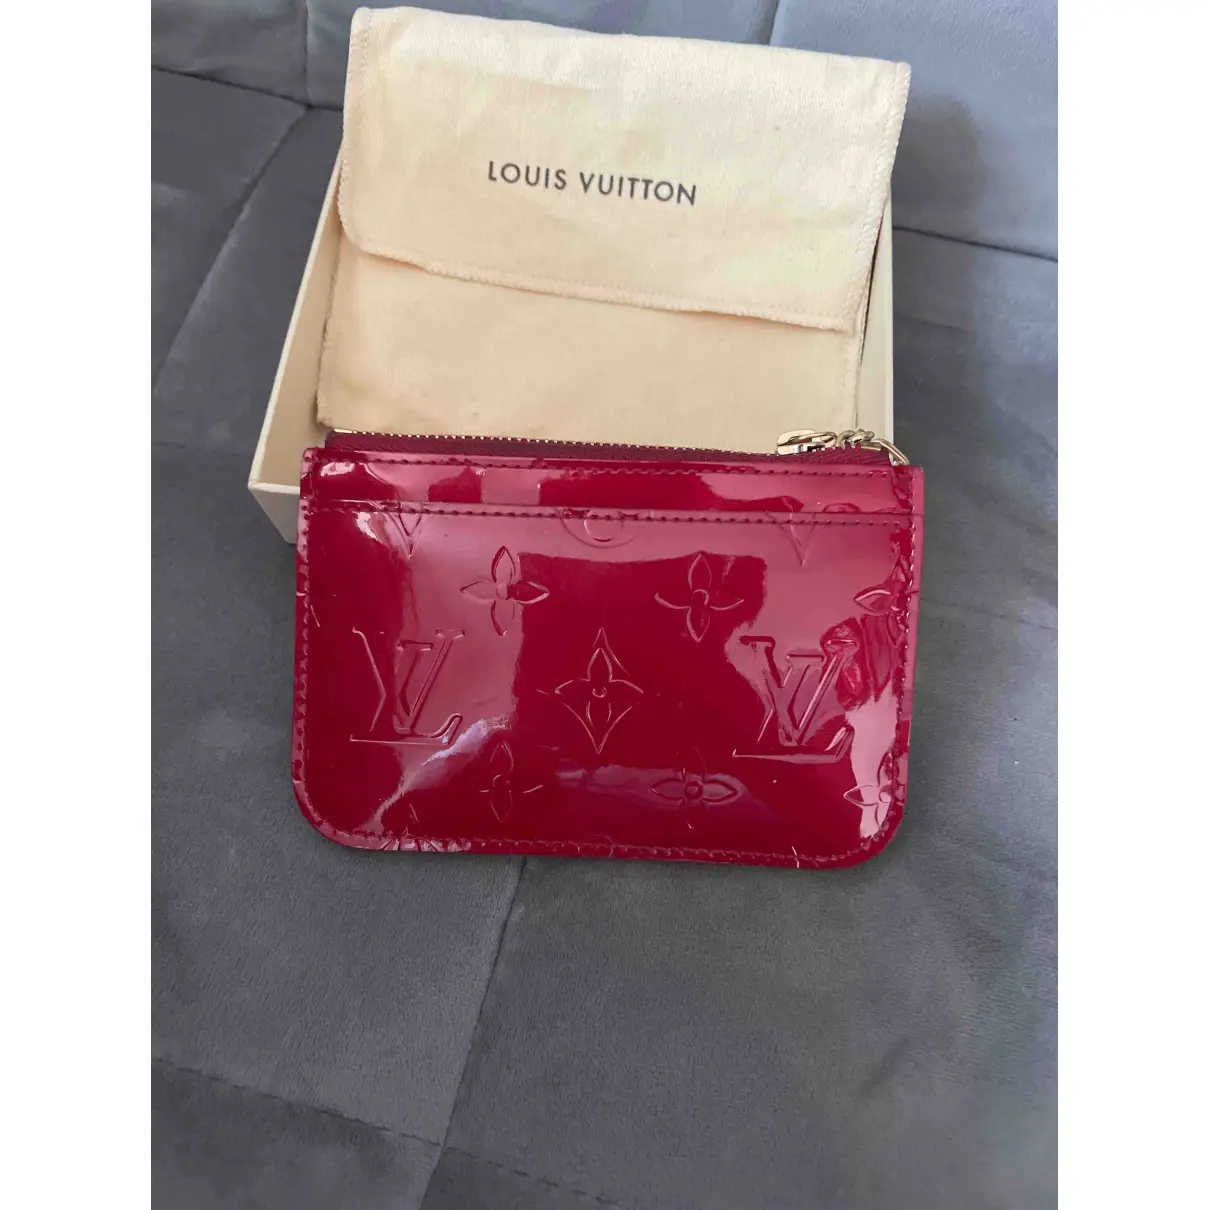 Buy Louis Vuitton Vénus patent leather wallet online